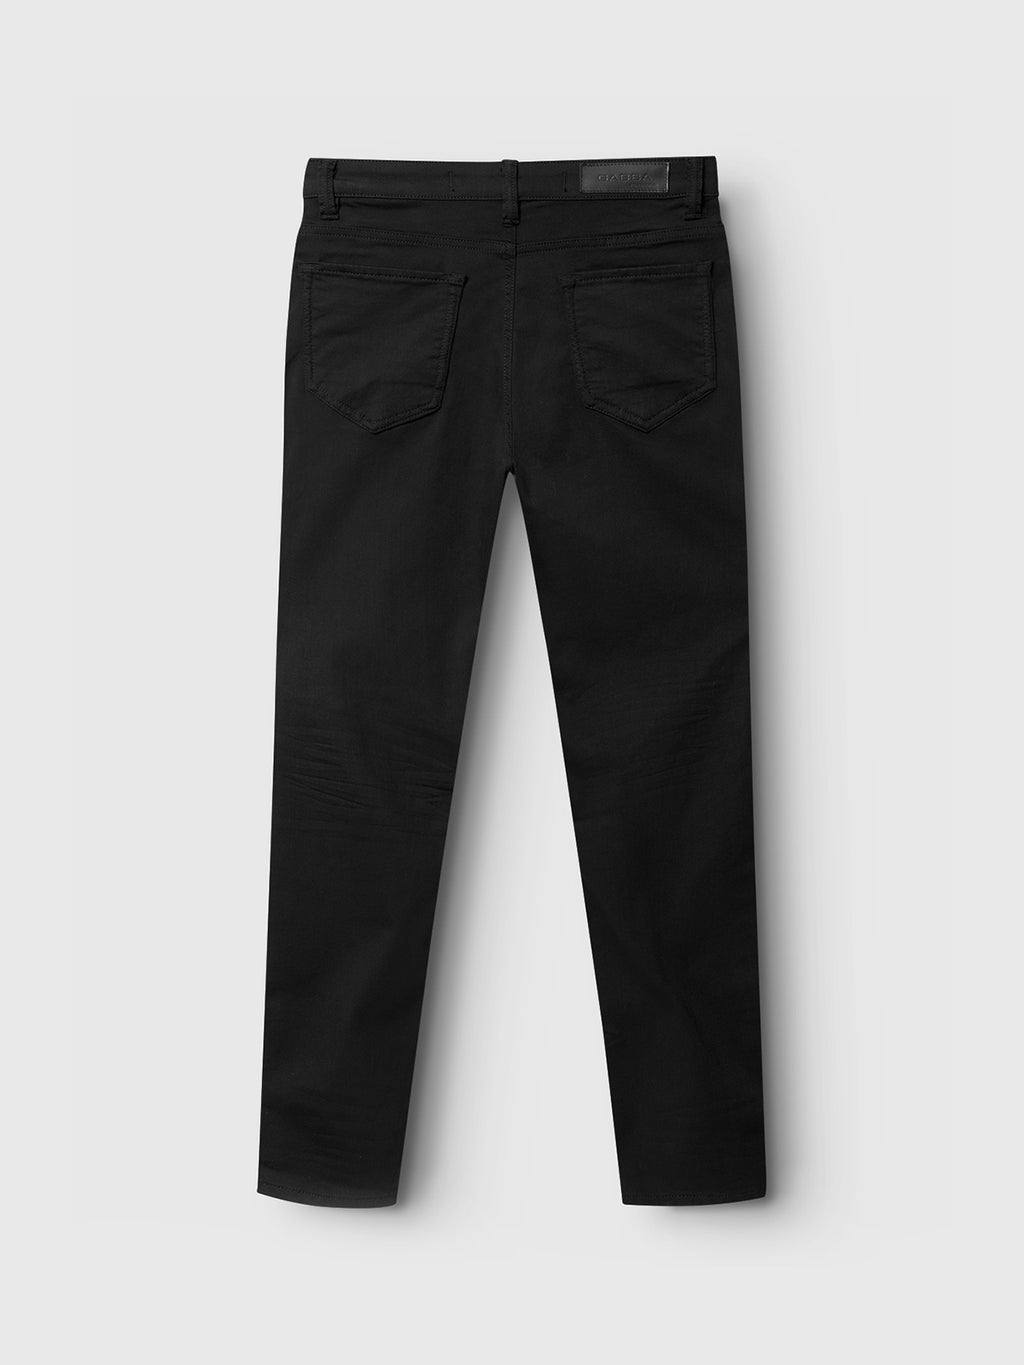 Jones K1911 Black Jeans - Black Denim